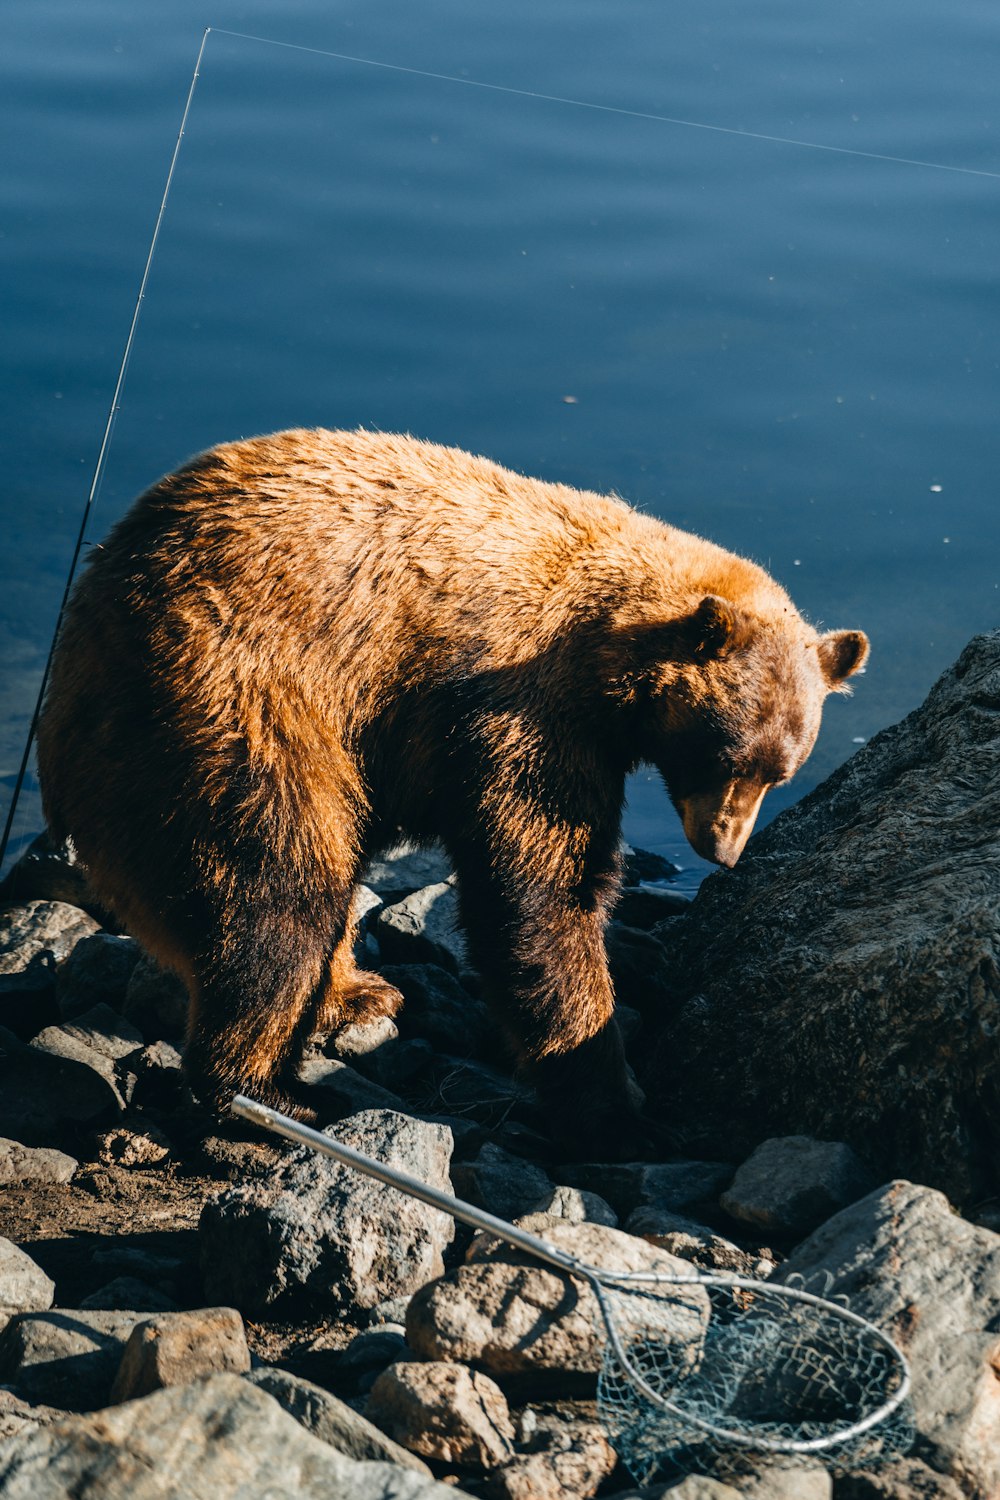 a bear walking on rocks